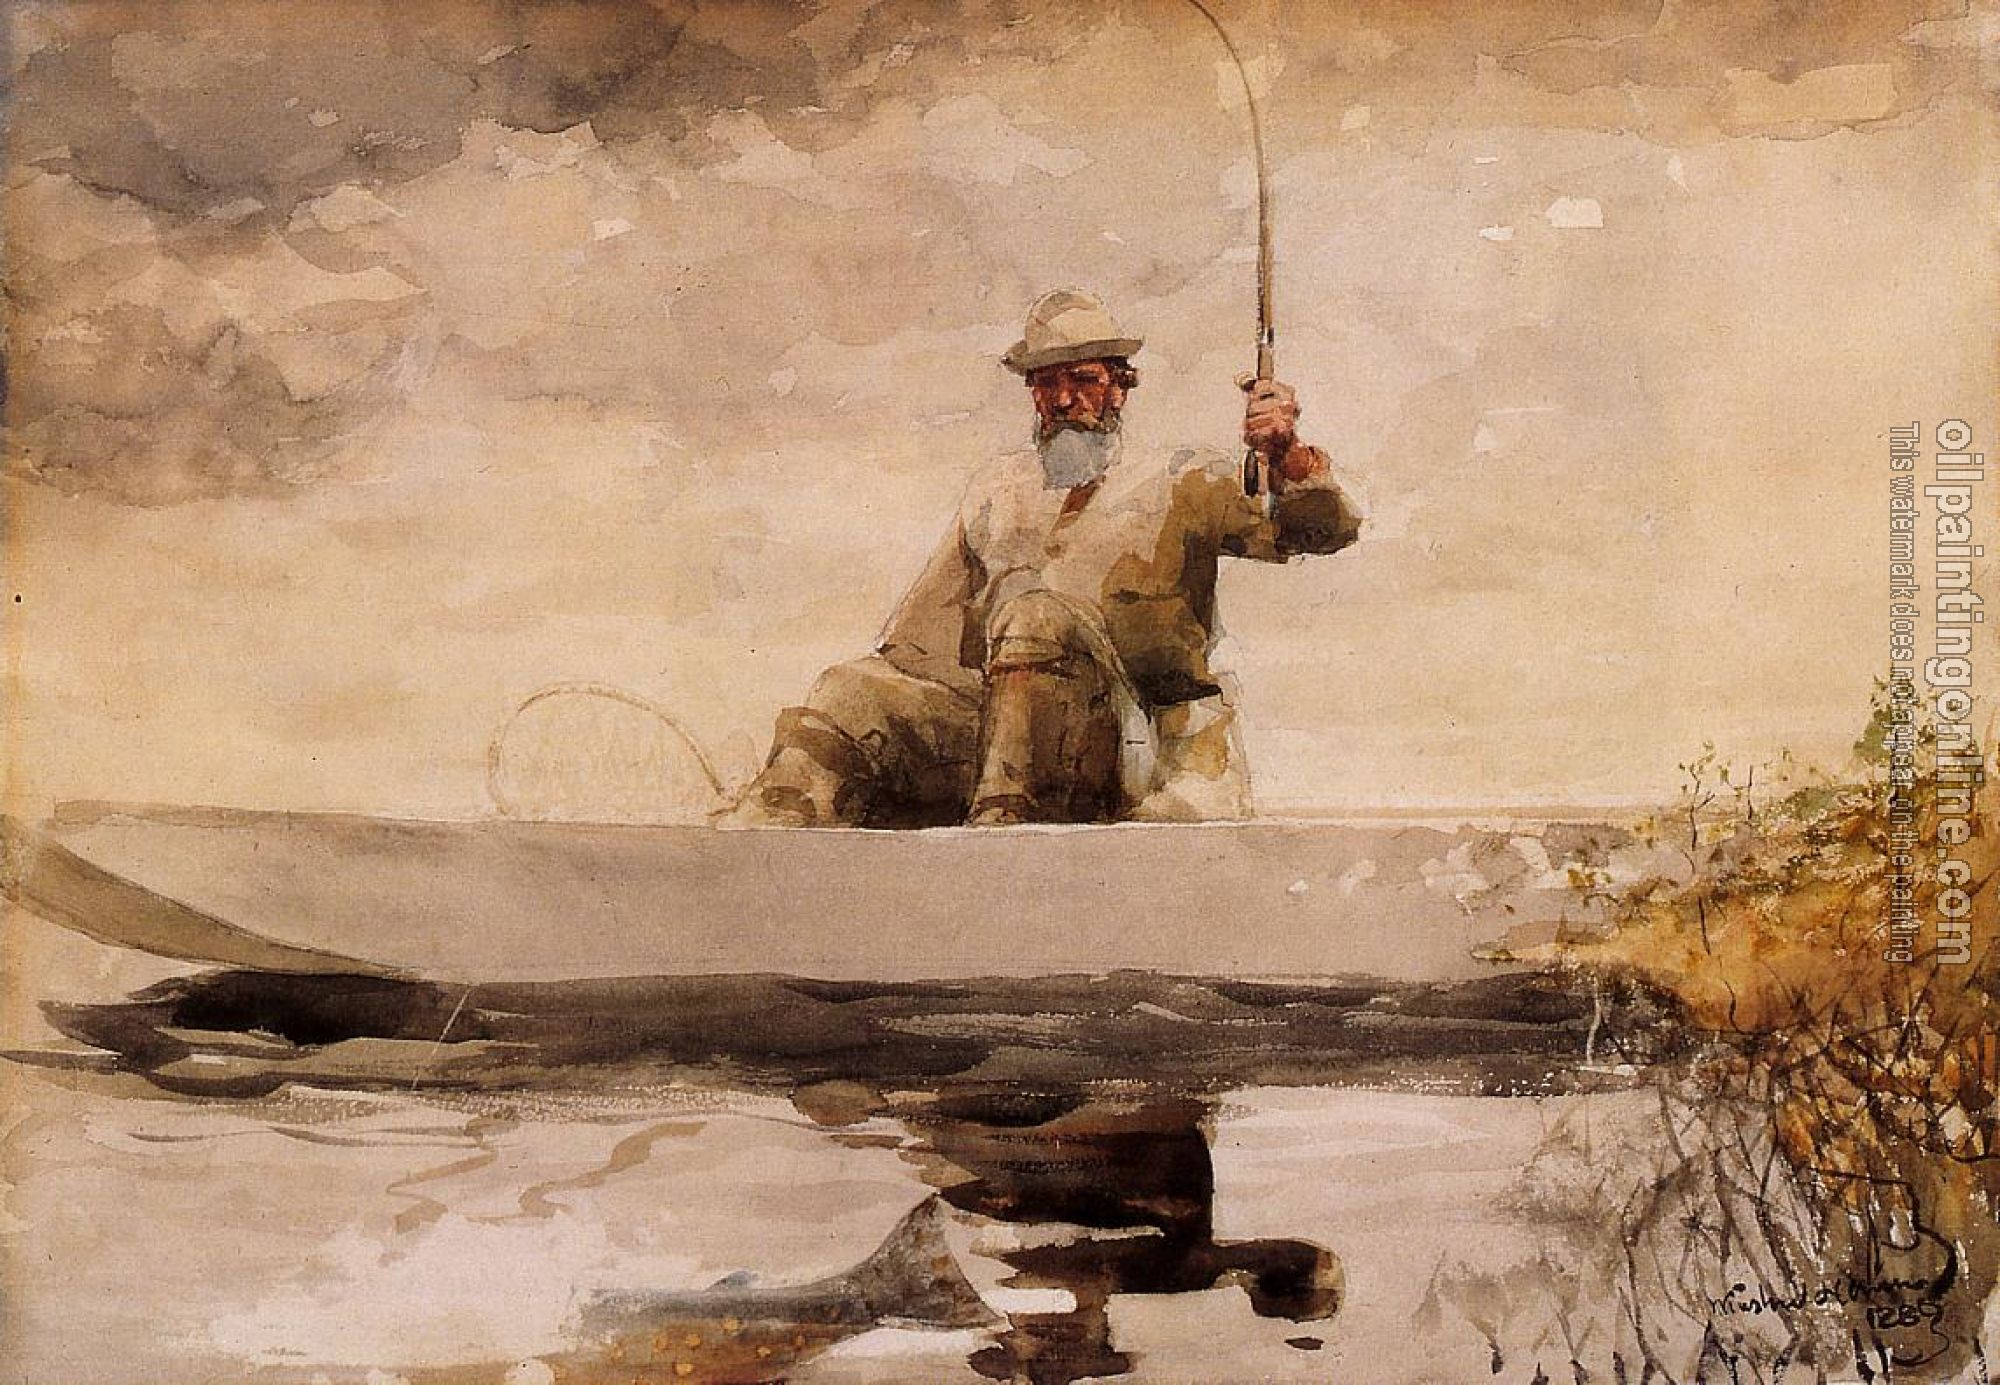 Homer, Winslow - Fishing in the Adirondacks